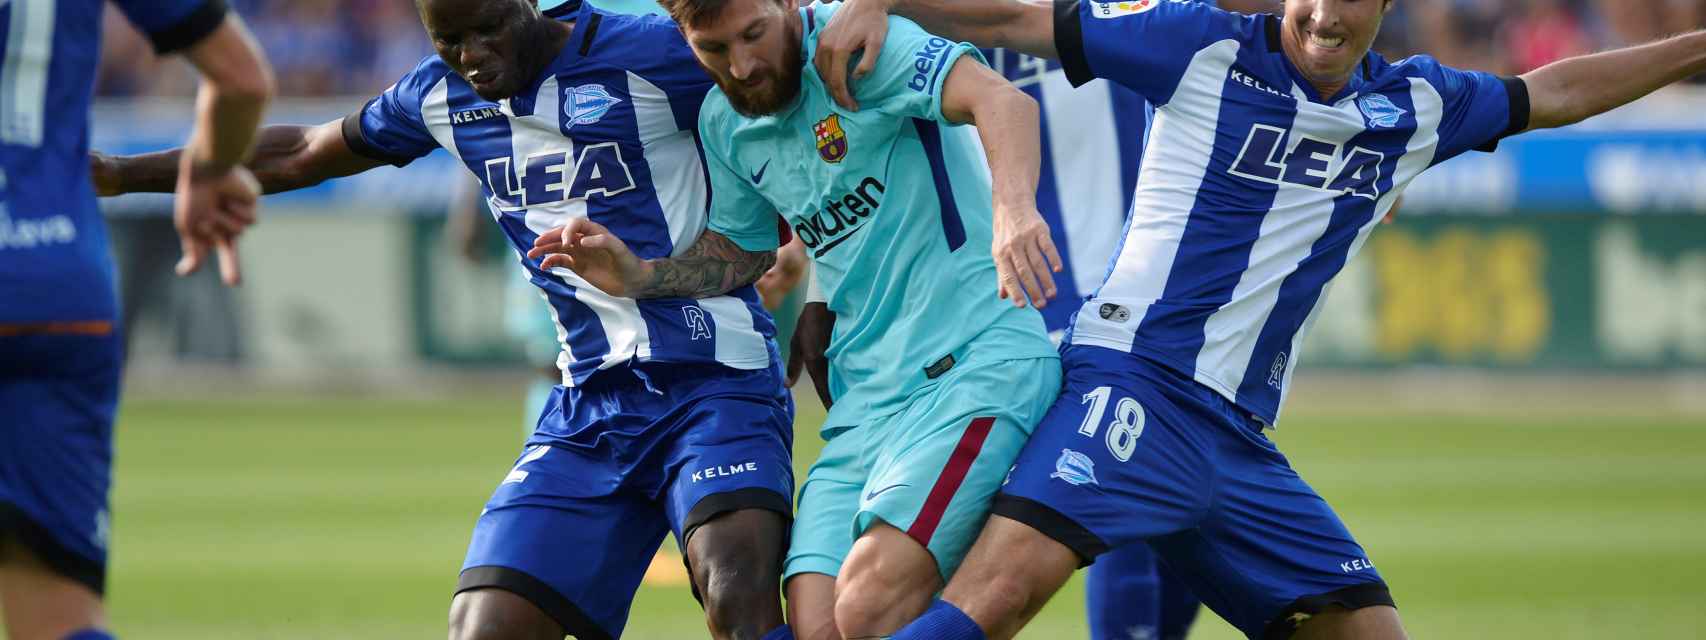 Messi disputa un baló en el Alavés - Barcelona.